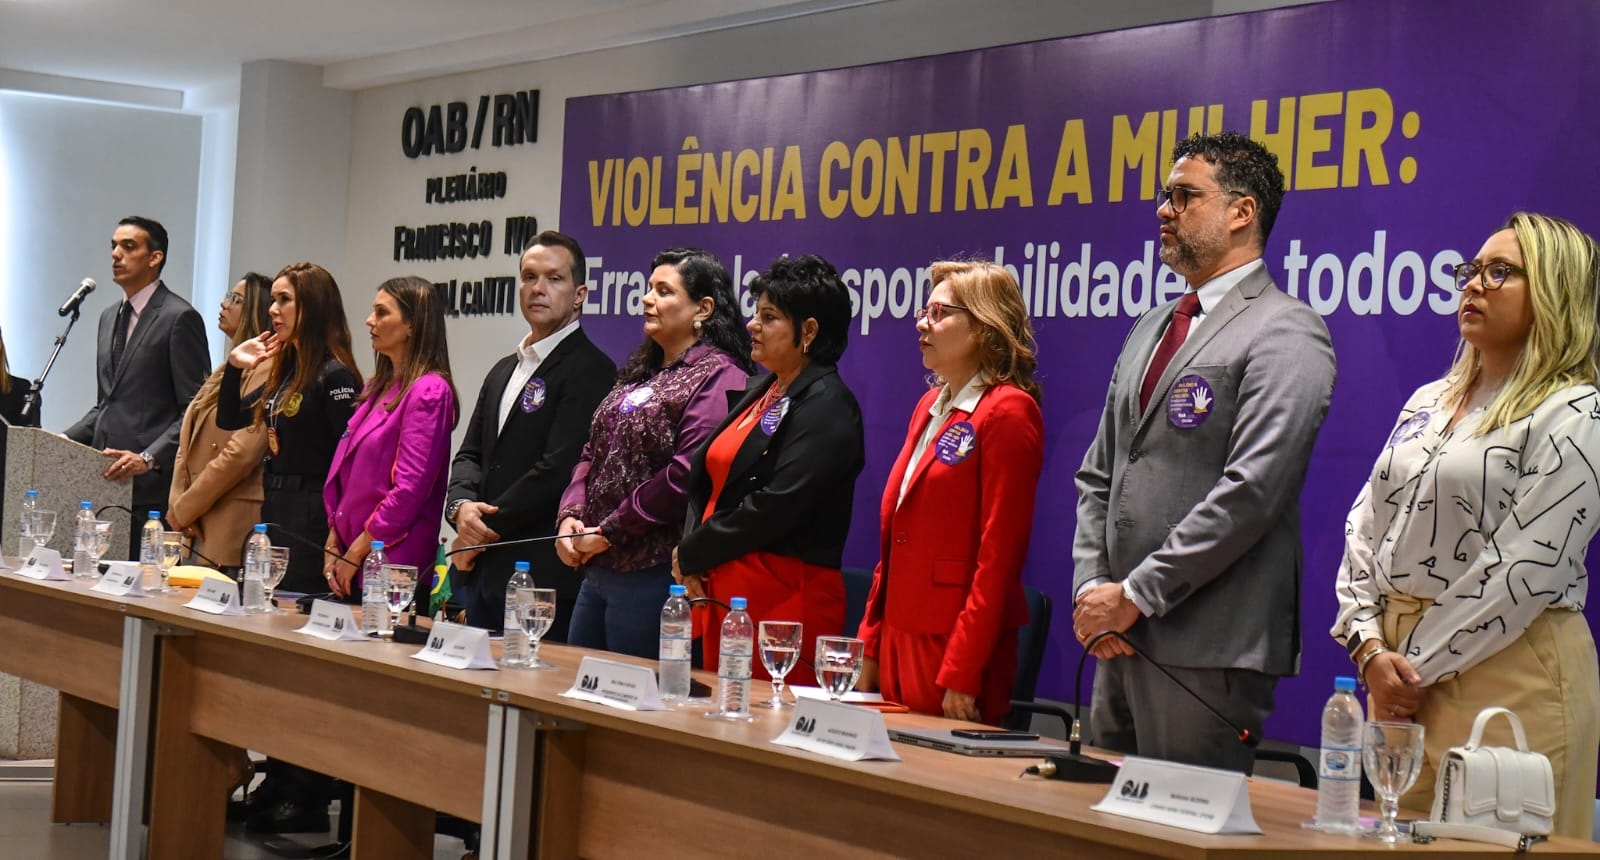 Prefeito interino participa de audiência pública na OAB/RN sobre violência contra a mulher